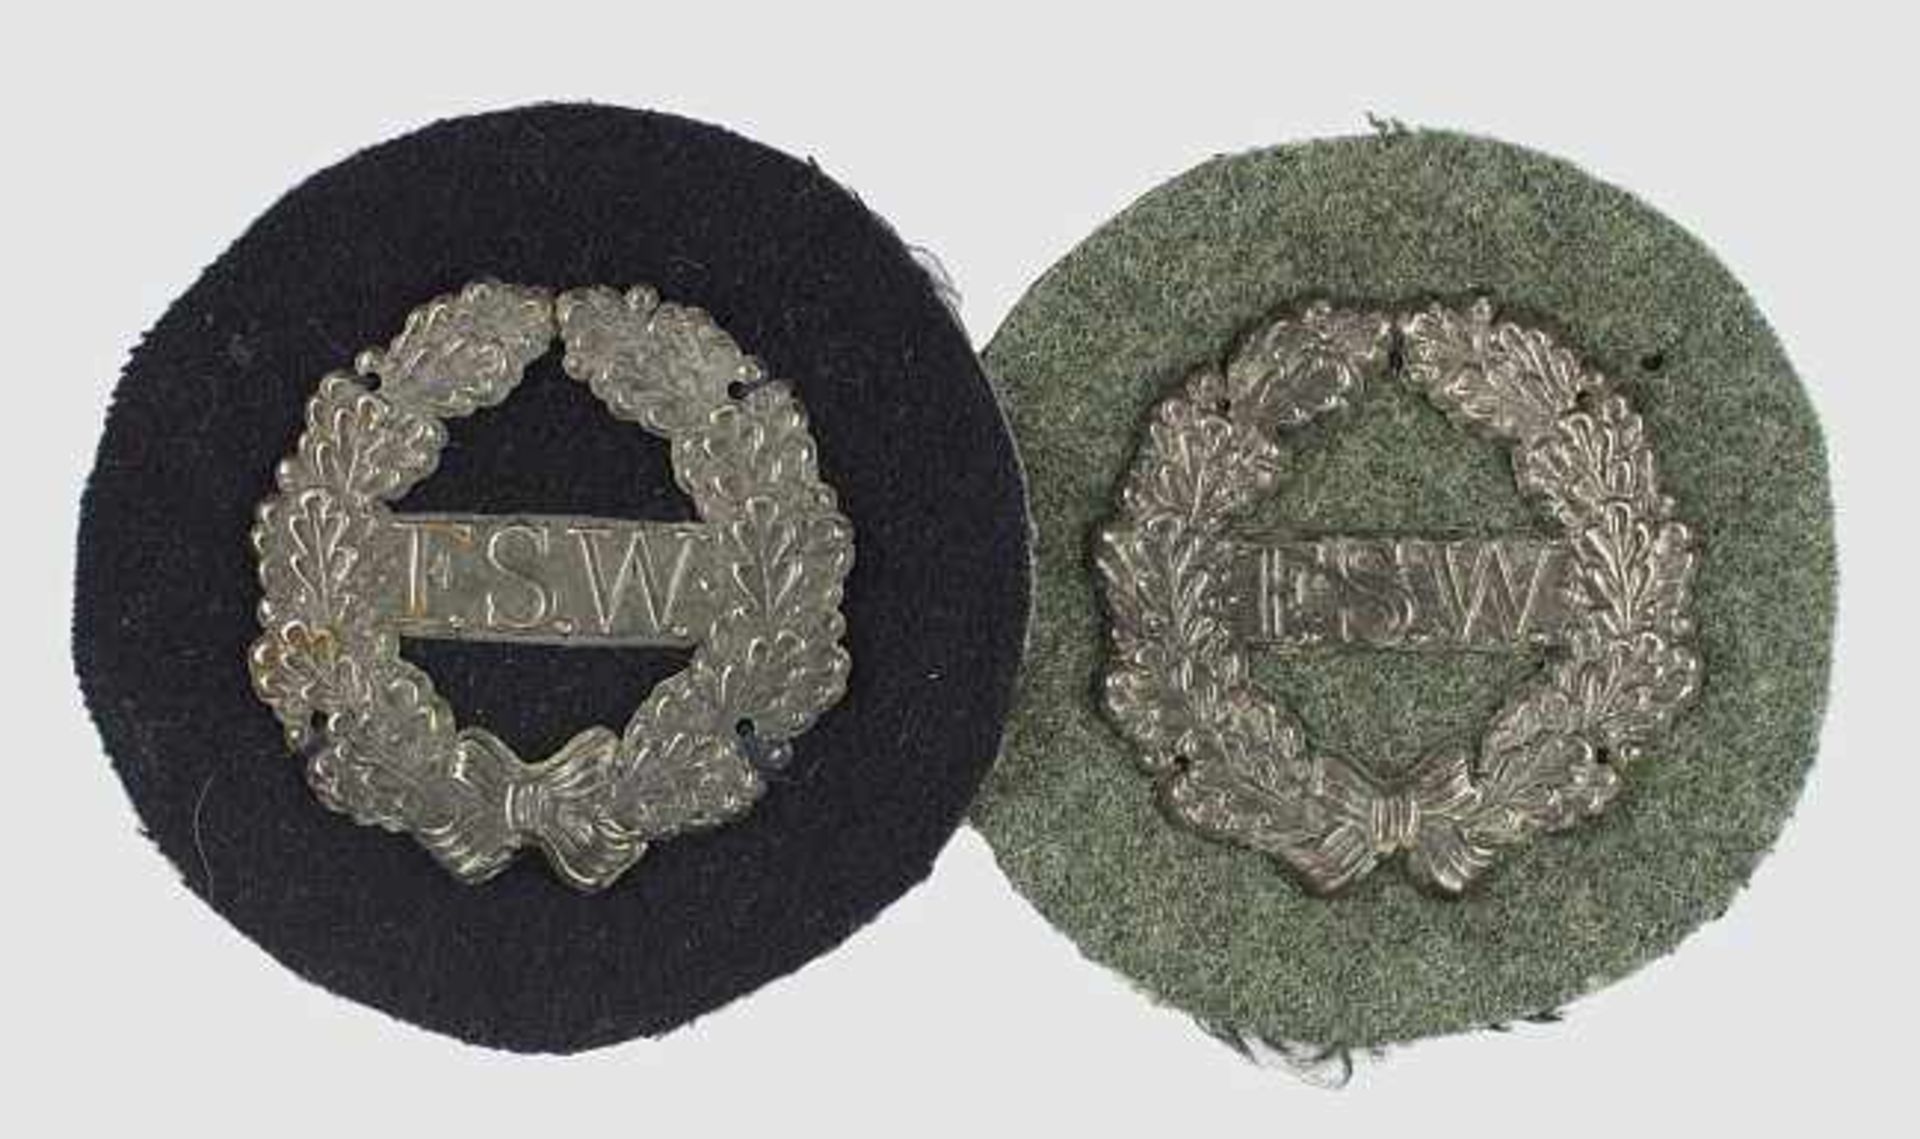 Freiwillige Soldatenwehr Wilhelmshaven,2 Kragenabzeichen, versilbert auf grauem und blauem TuchII